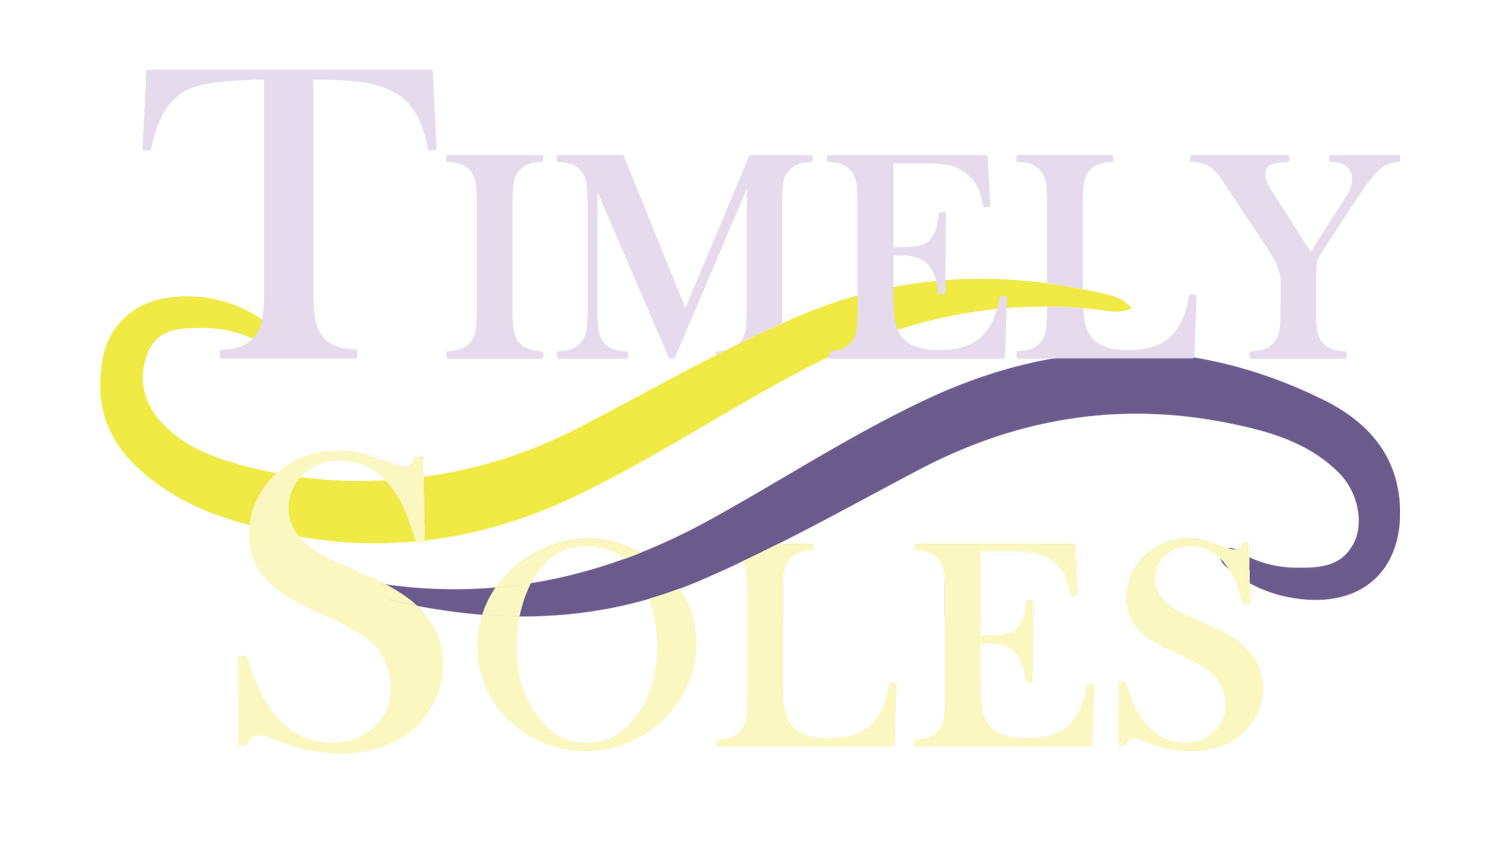 TimelySoles